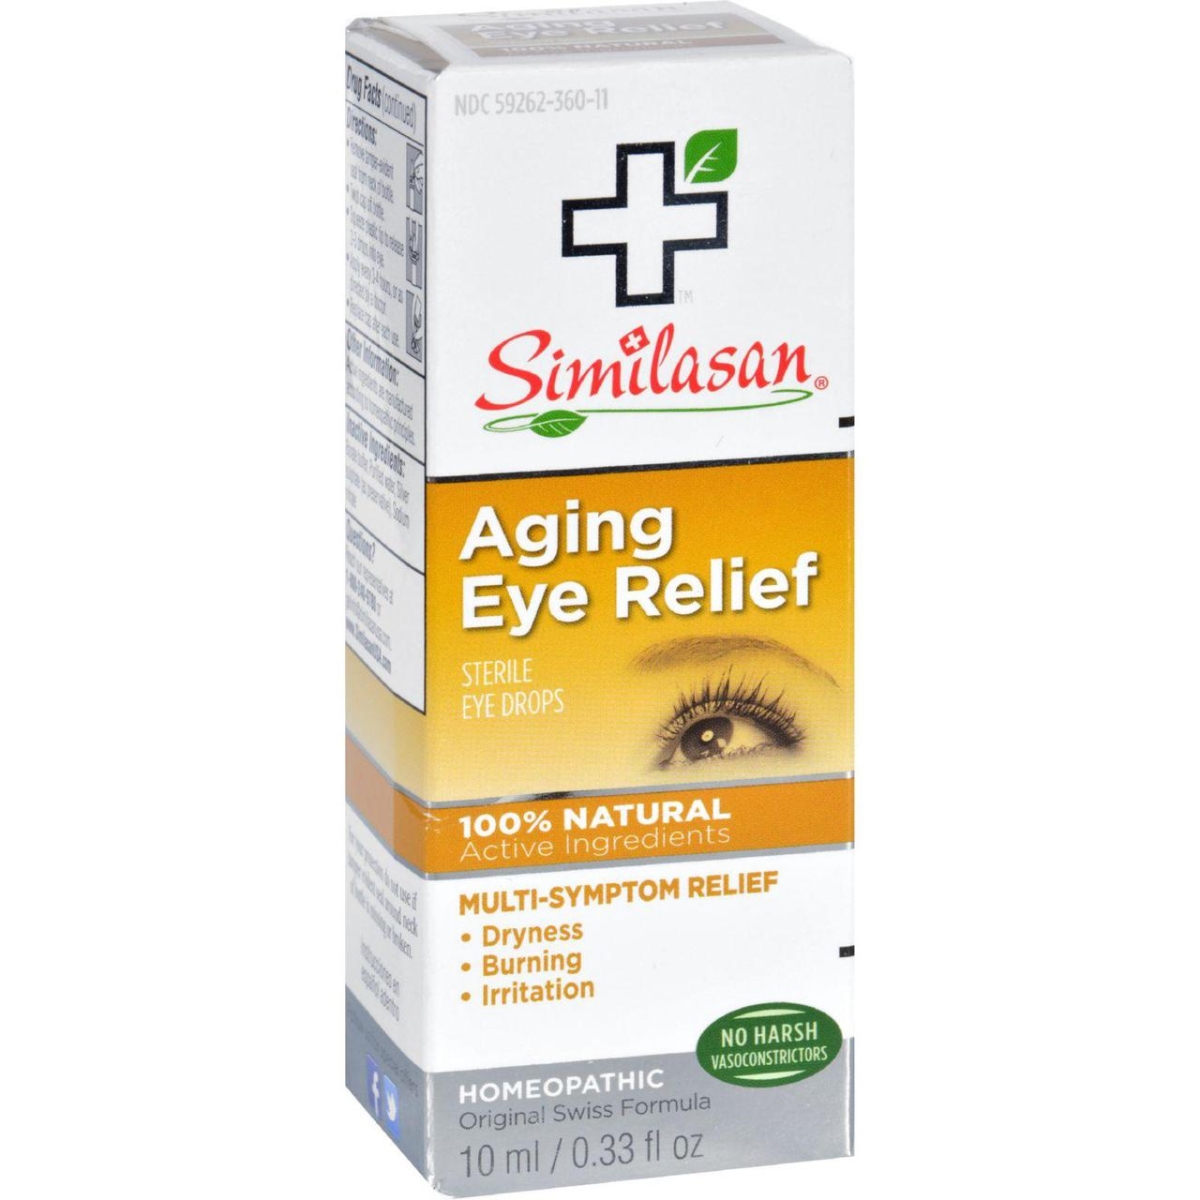 Hg1555630 0.33 Fl Oz Eye Drops - Aging Relief